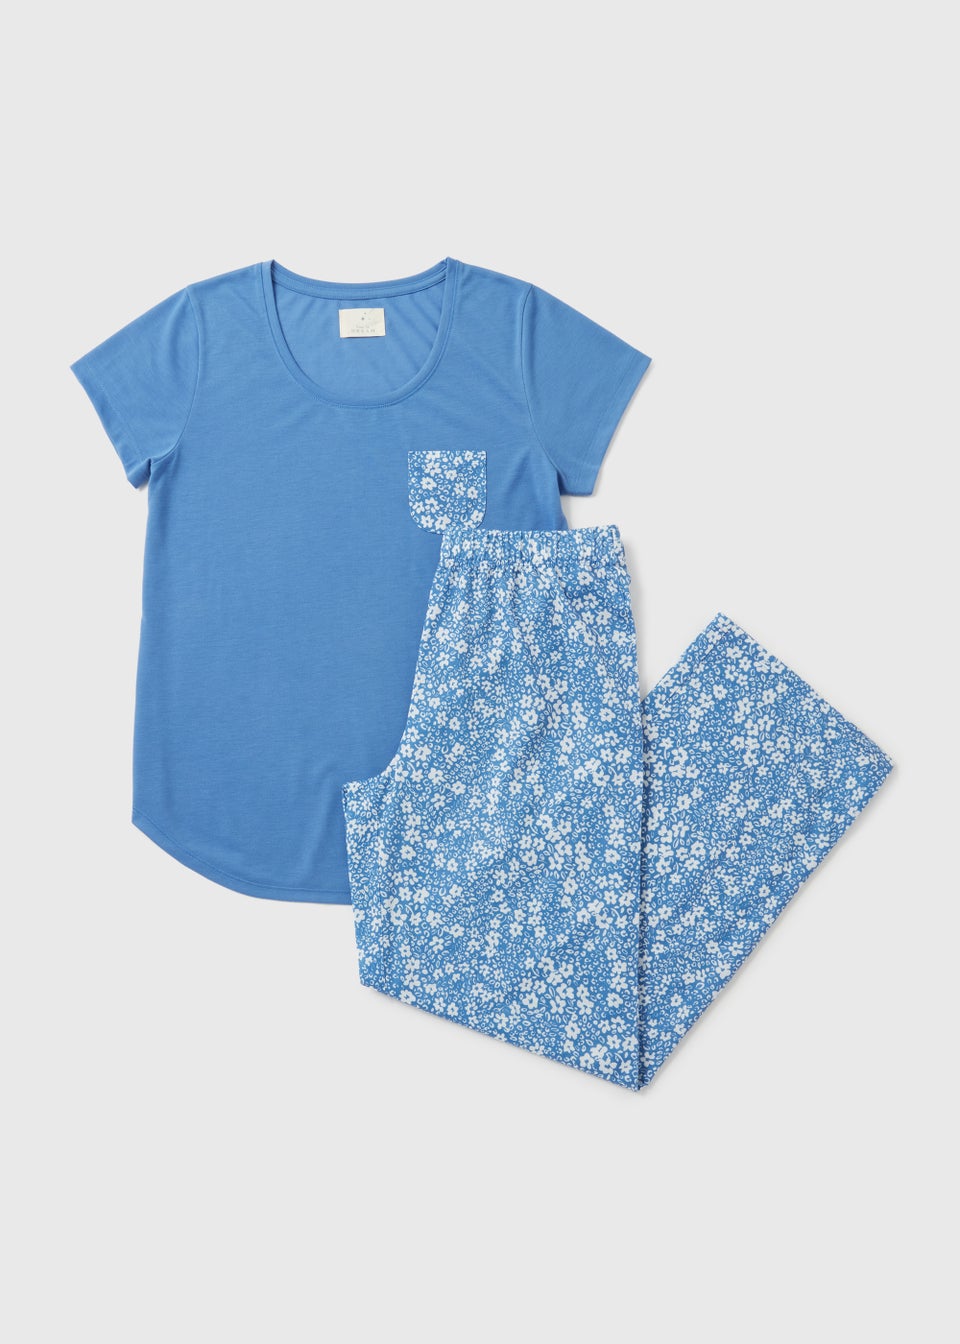 Blue Floral Print Pyjamas